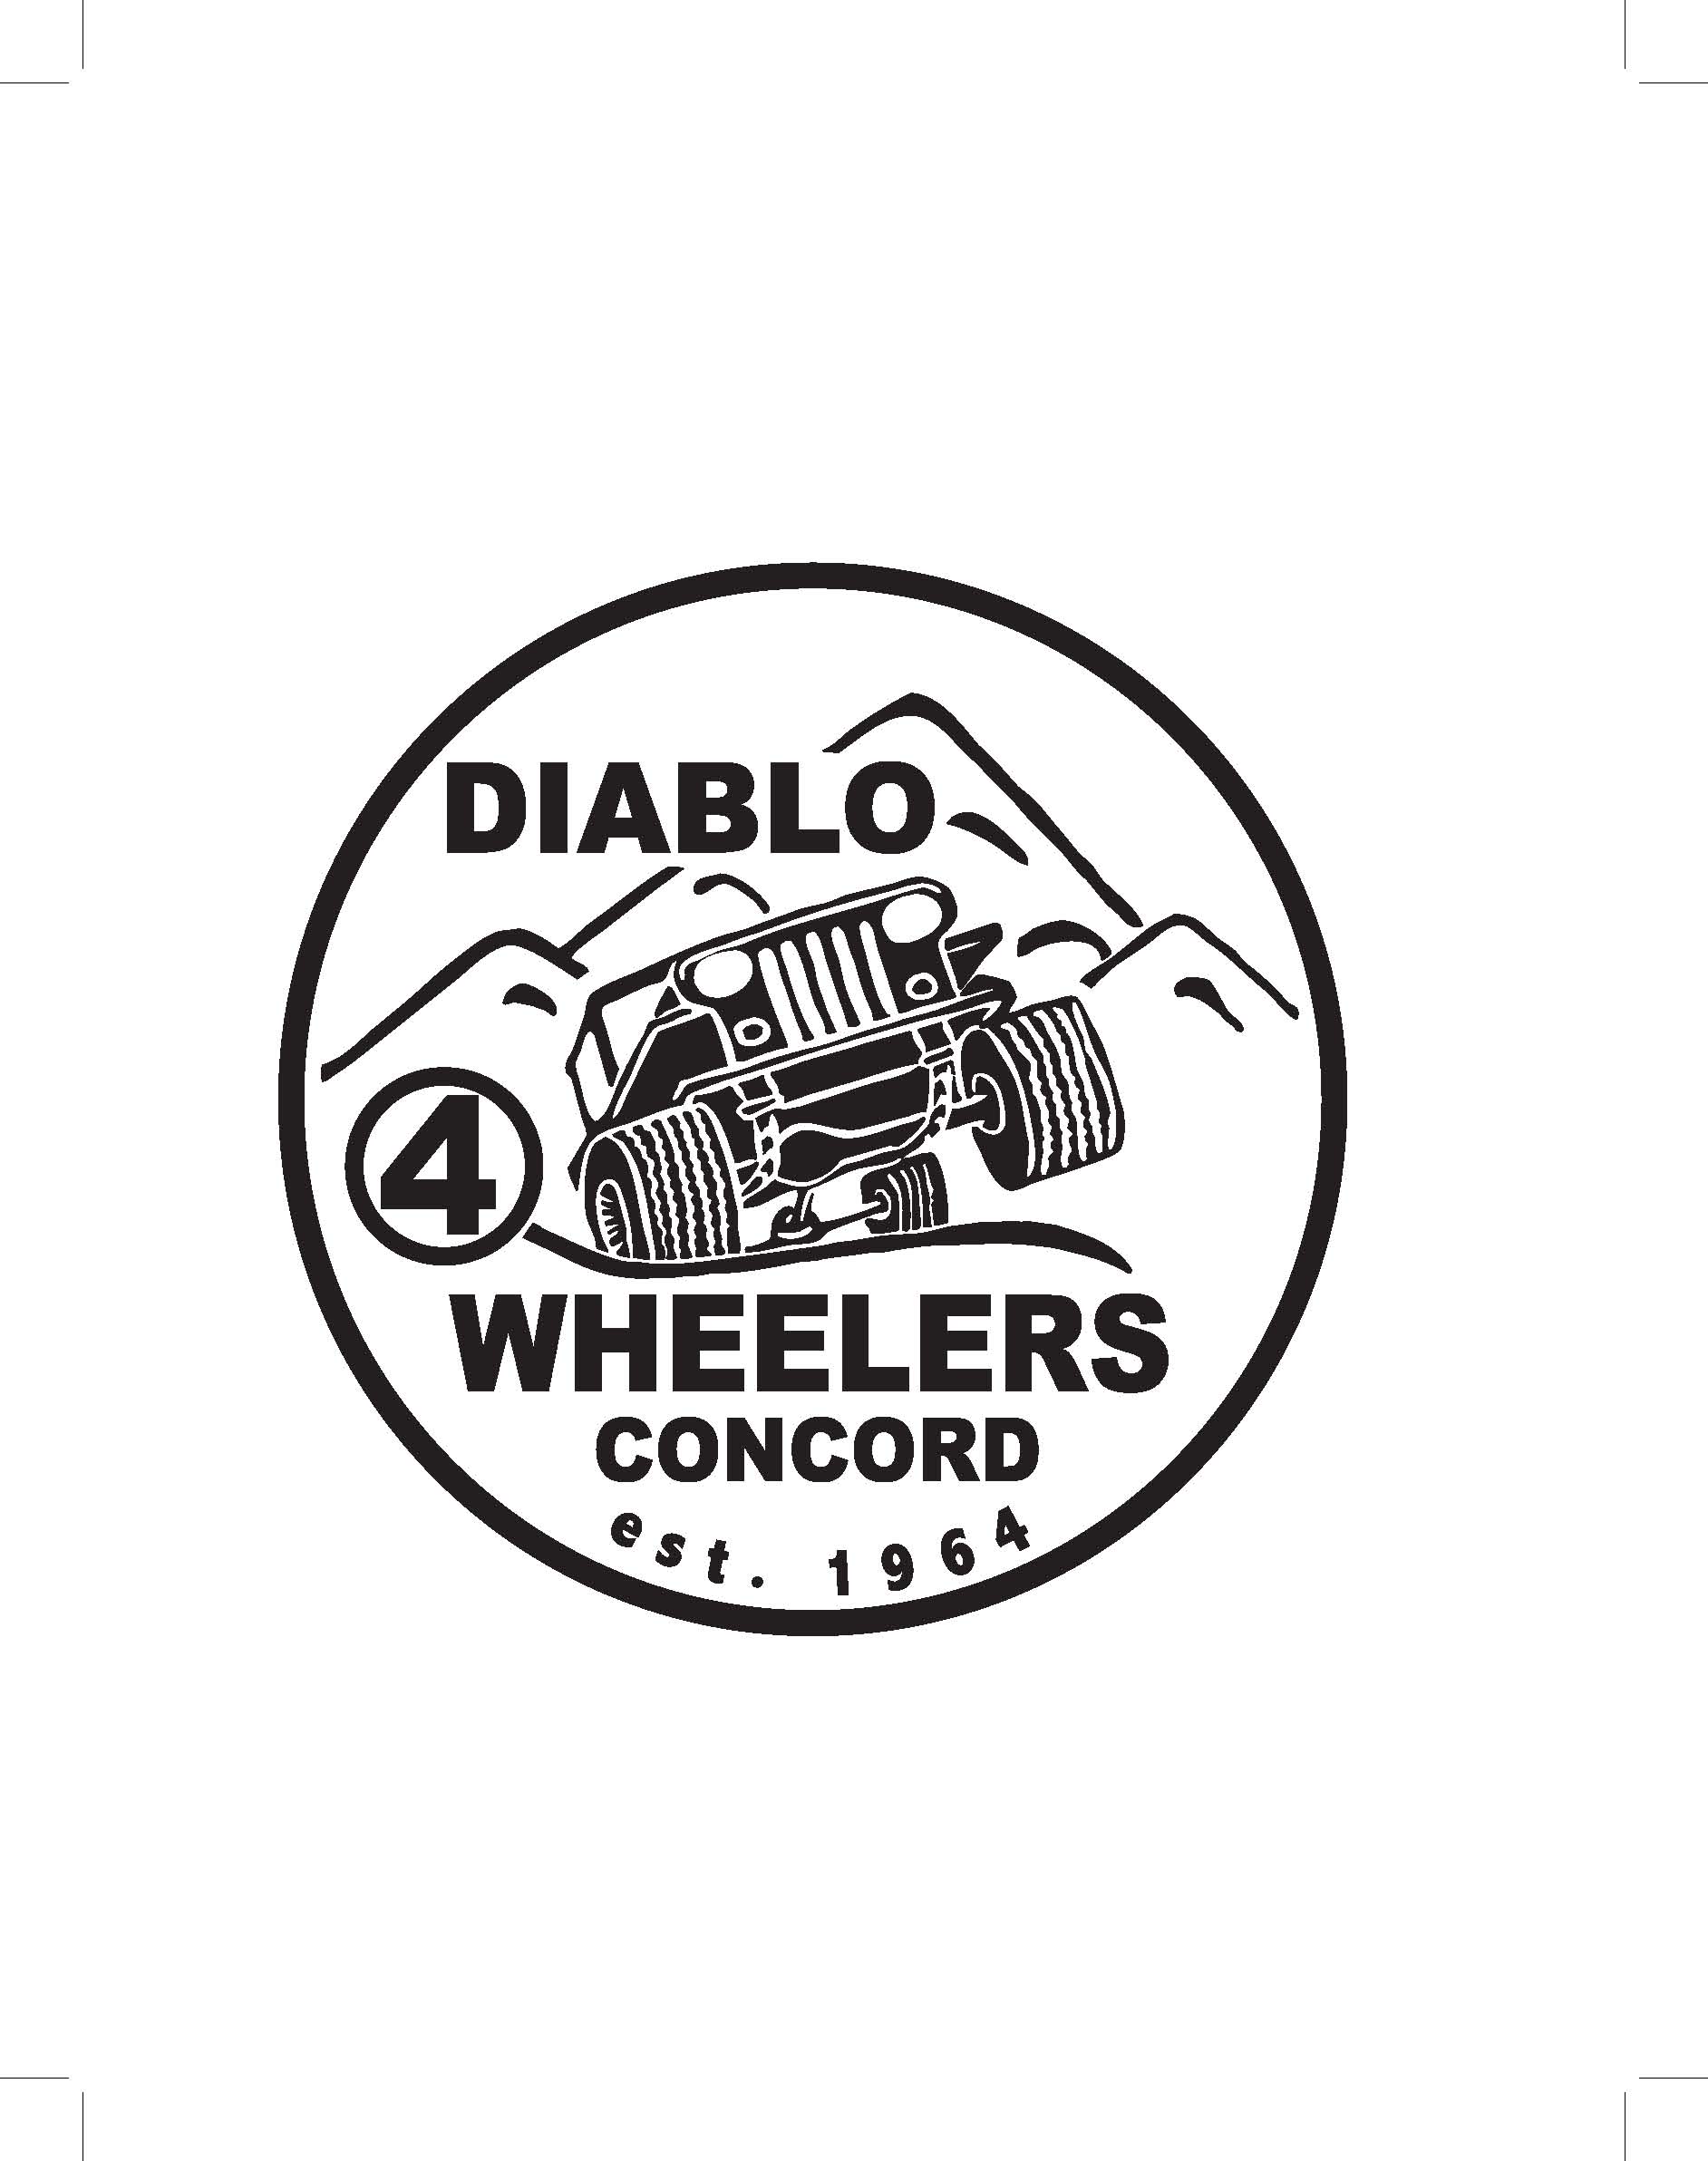 Diablo 4 Wheelers